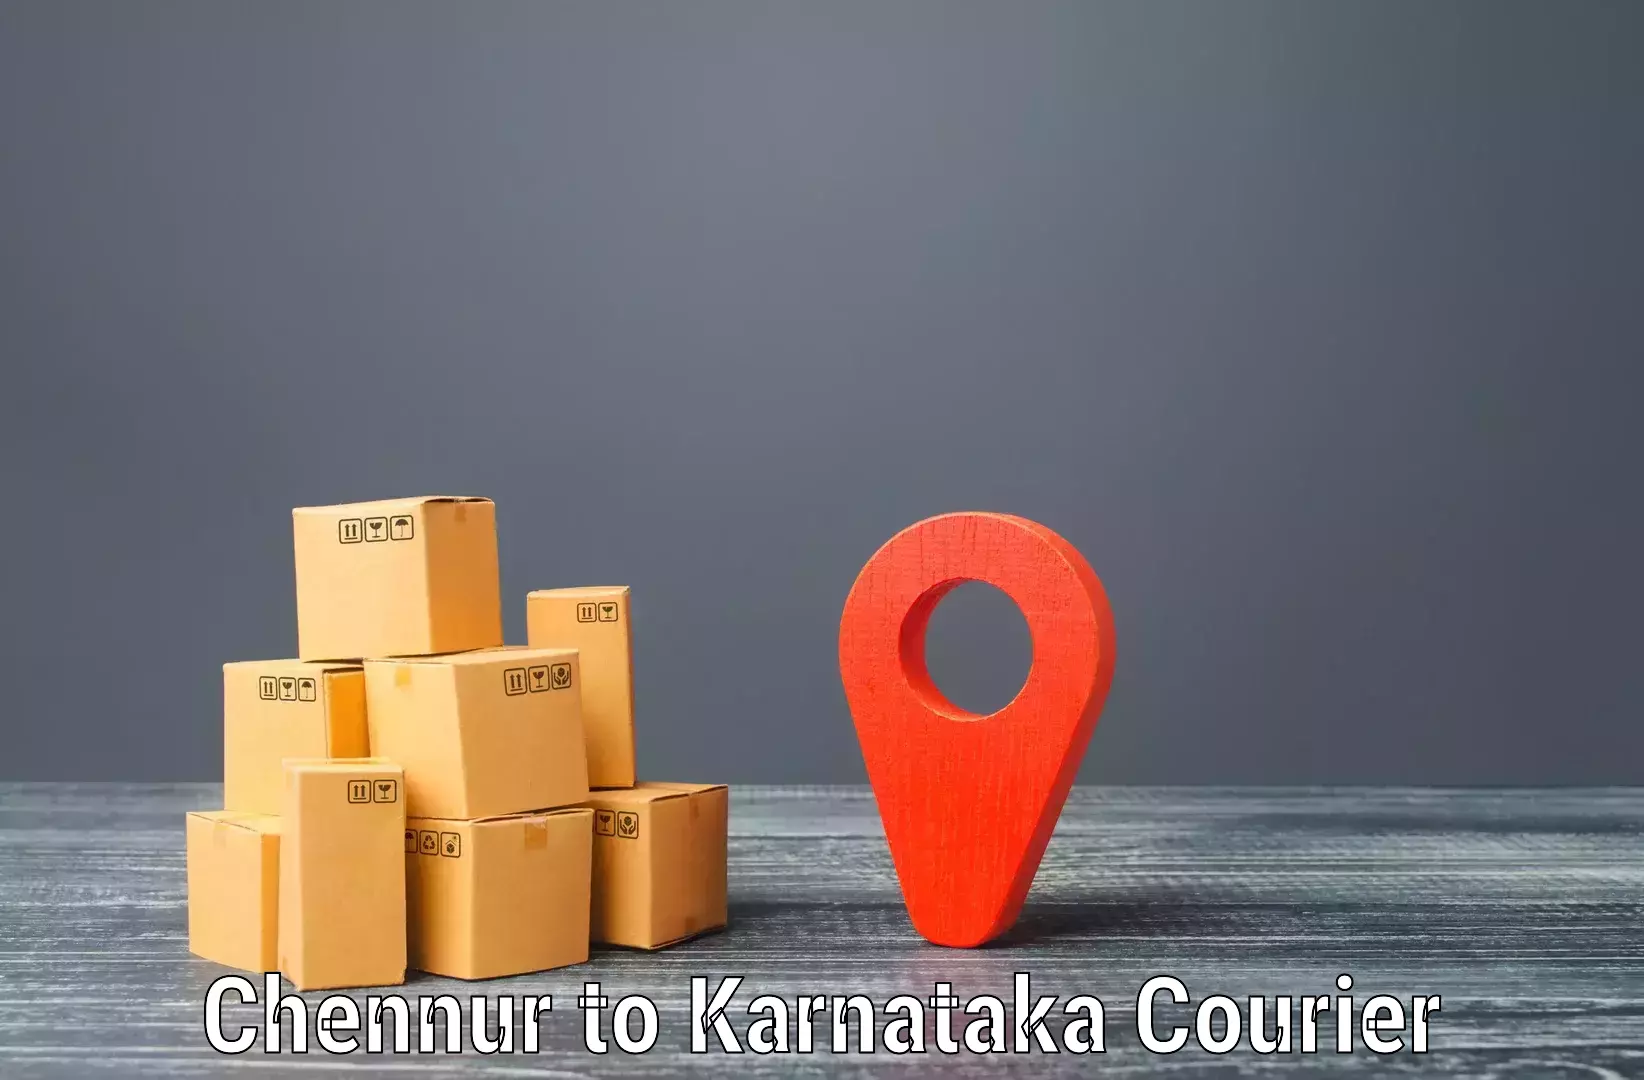 Next-day delivery options Chennur to Kotturu